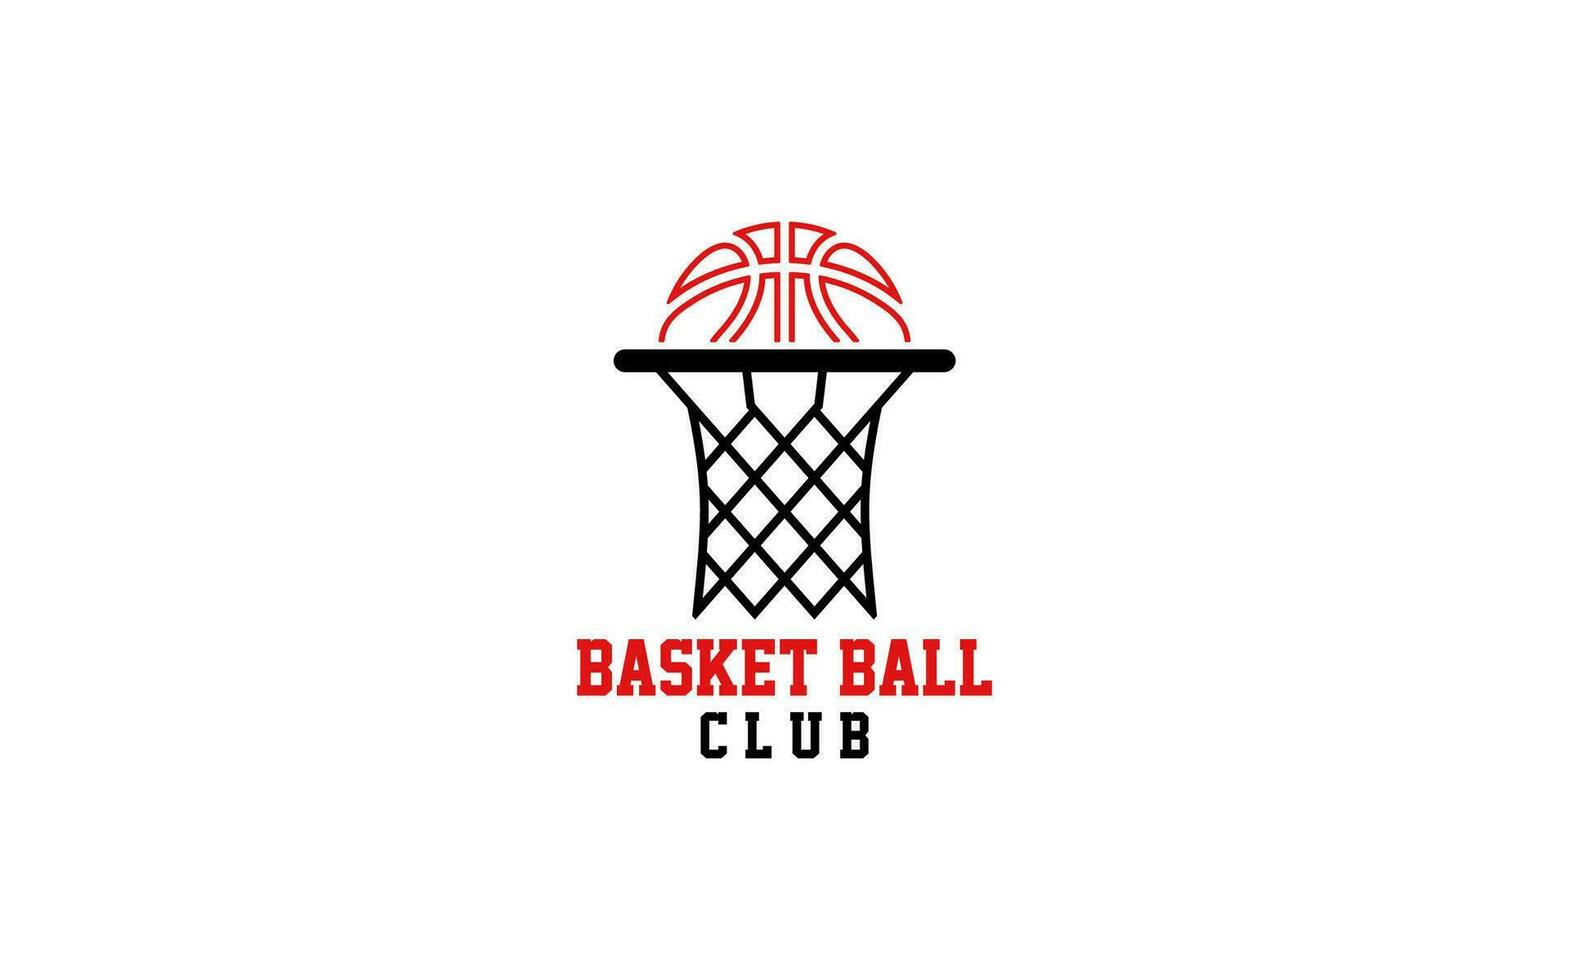 Basket ball club design logo vector